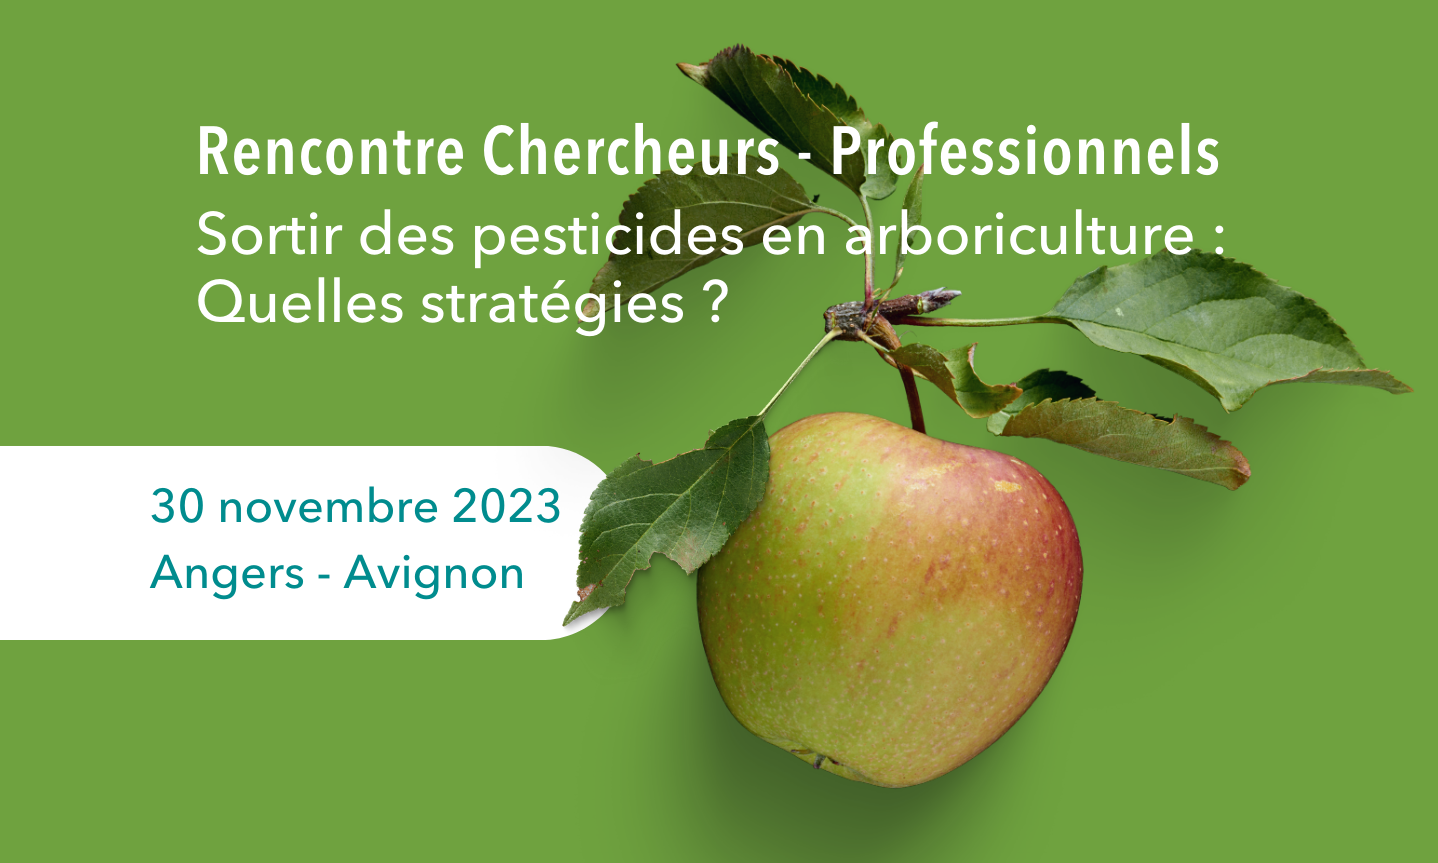 [EVENT] Rencontre Chercheurs - Professionnels (#RCP23) - Sortir des pesticides en arboriculture : Quelles stratégies ?